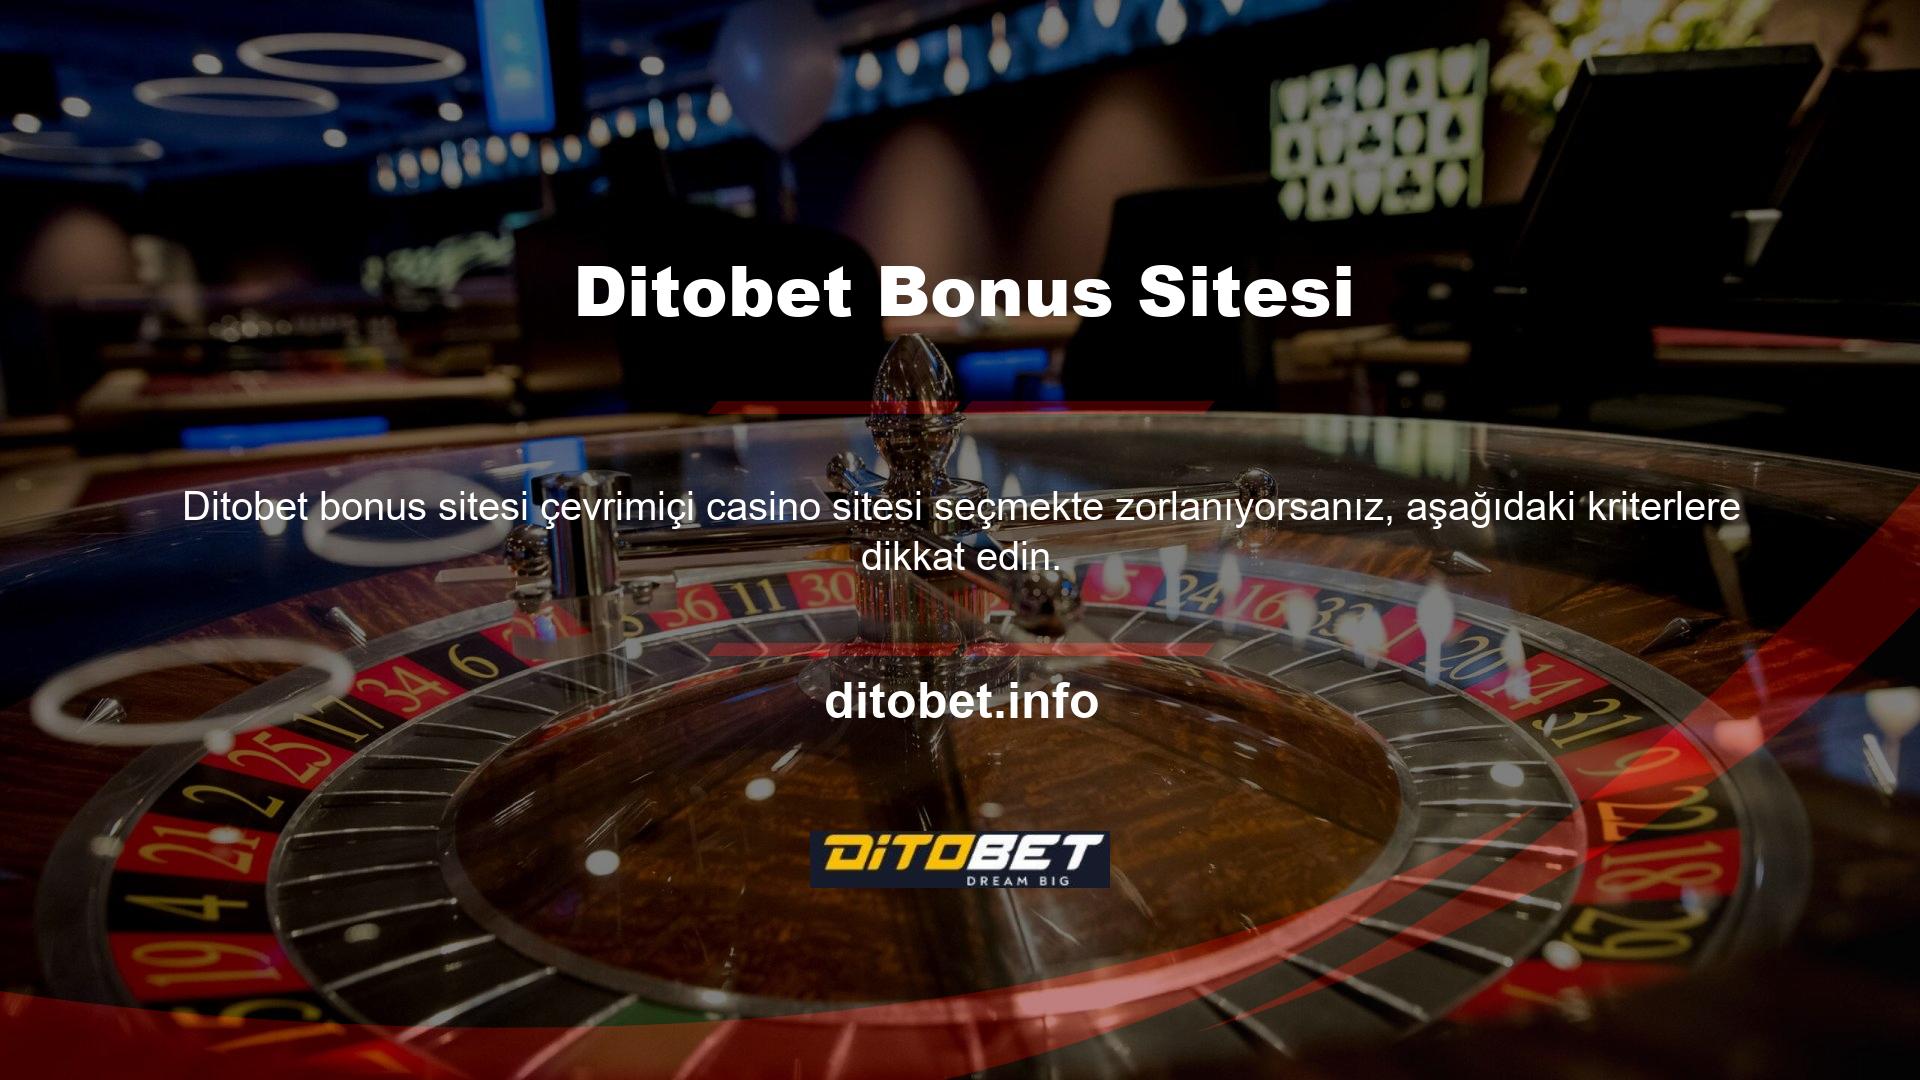 Saygın çevrimiçi casino siteleri, kullanıcılarıyla lisansları ve lisans numaralarını paylaşabilir